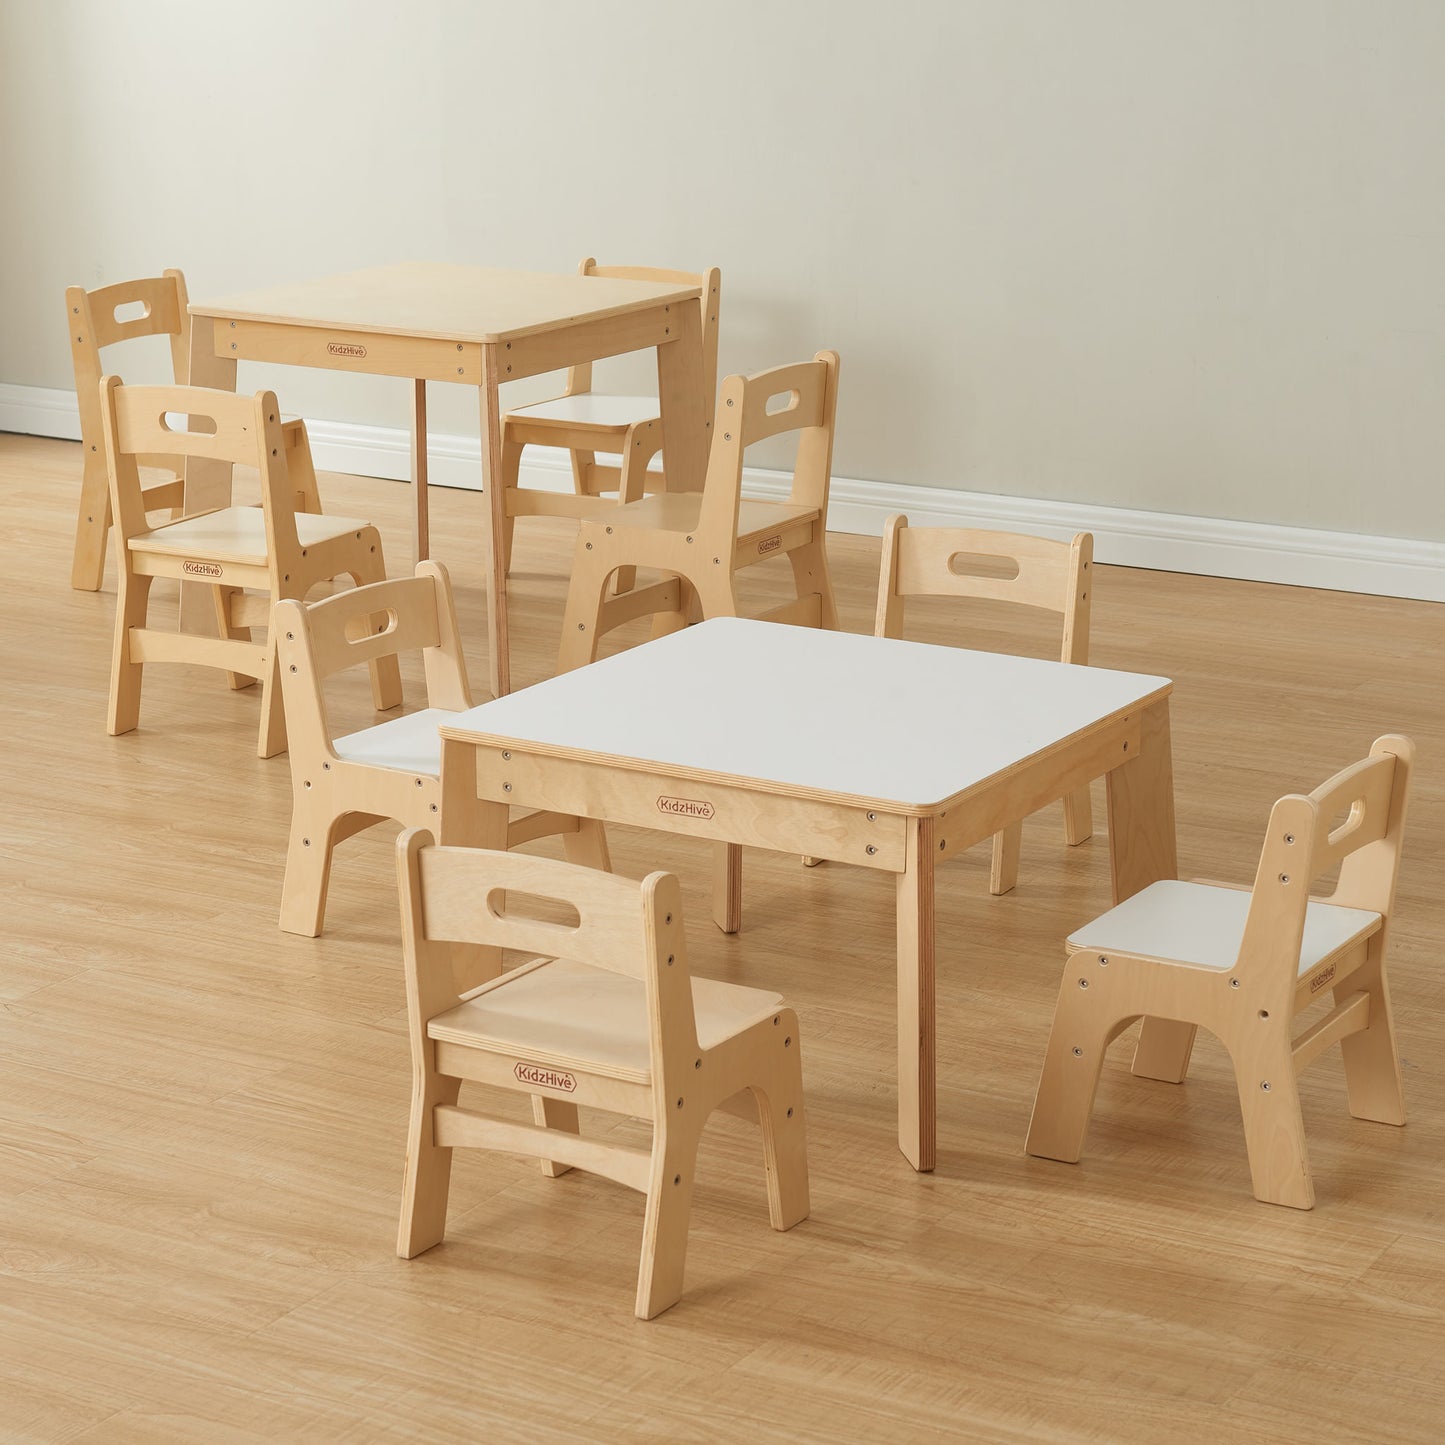 Masterkidz Duplex Tables & Chairs Wooden 樂學木製桌椅系列